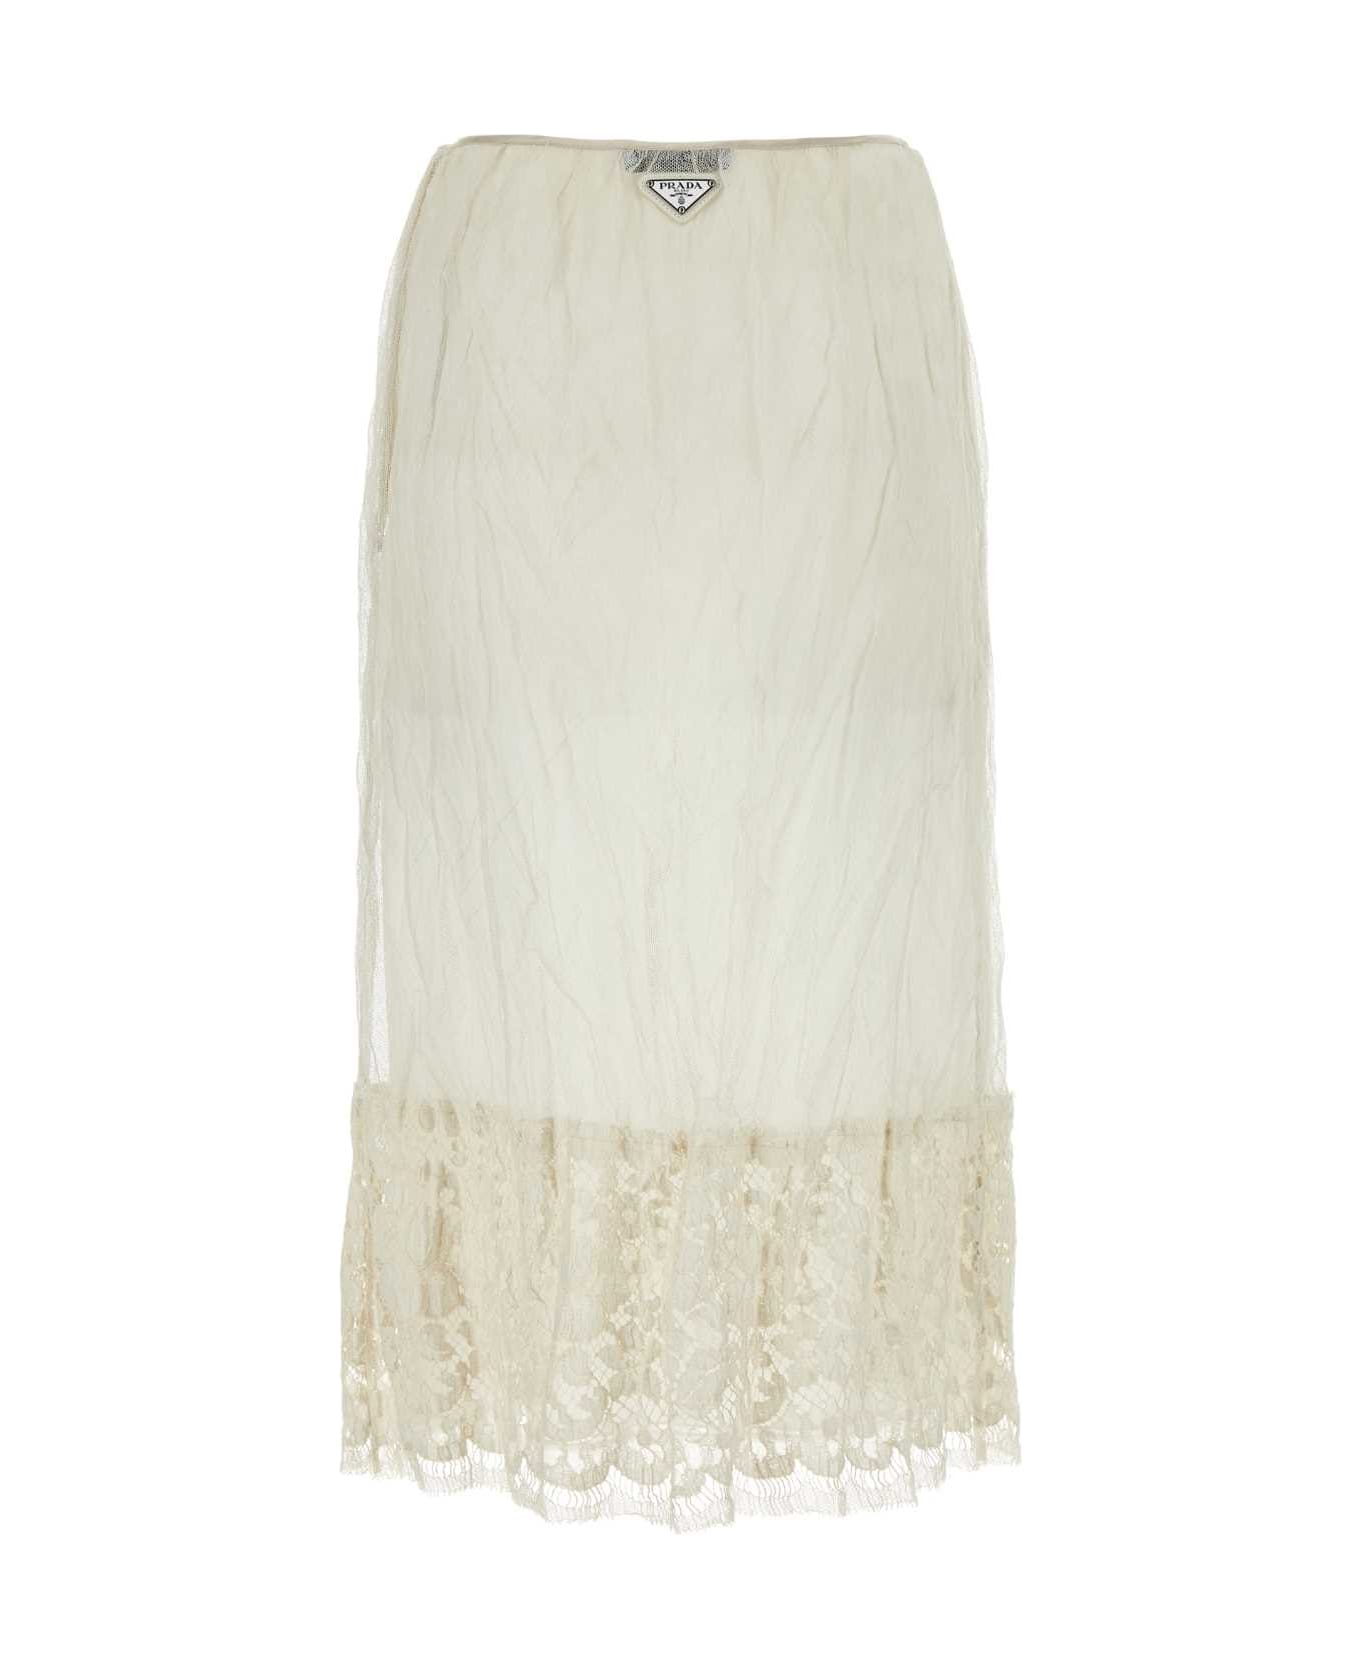 Prada Ivory Mesh Skirt - NATURALE スカート